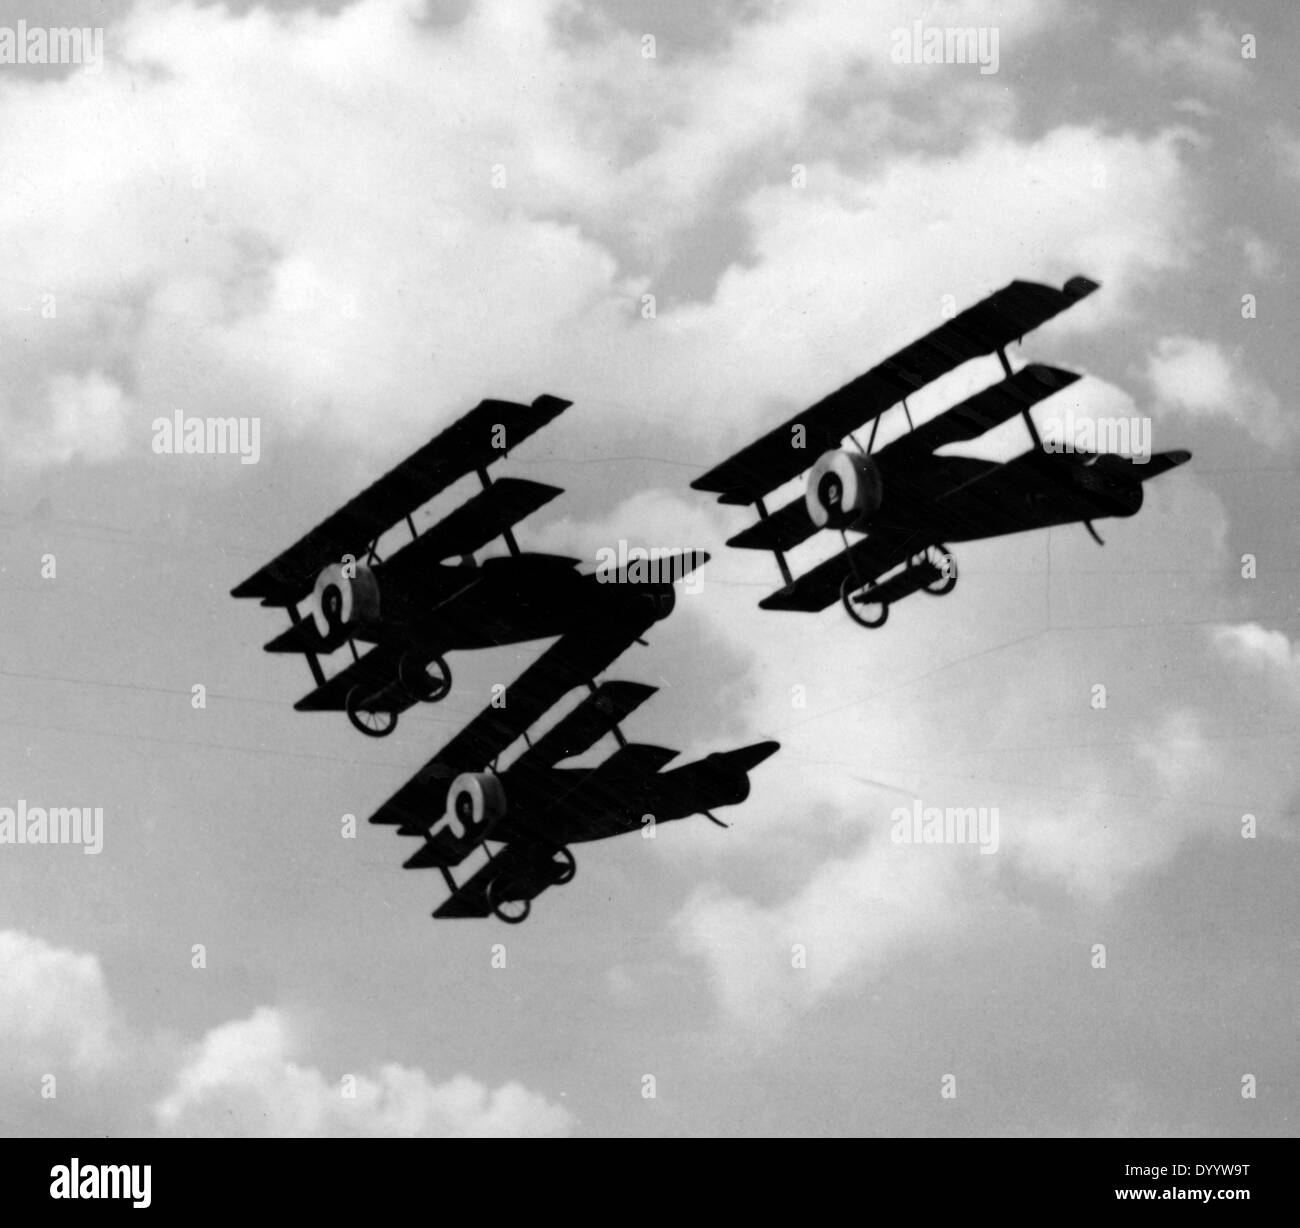 Des triplans Fokker allemand pendant la Première Guerre mondiale Banque D'Images